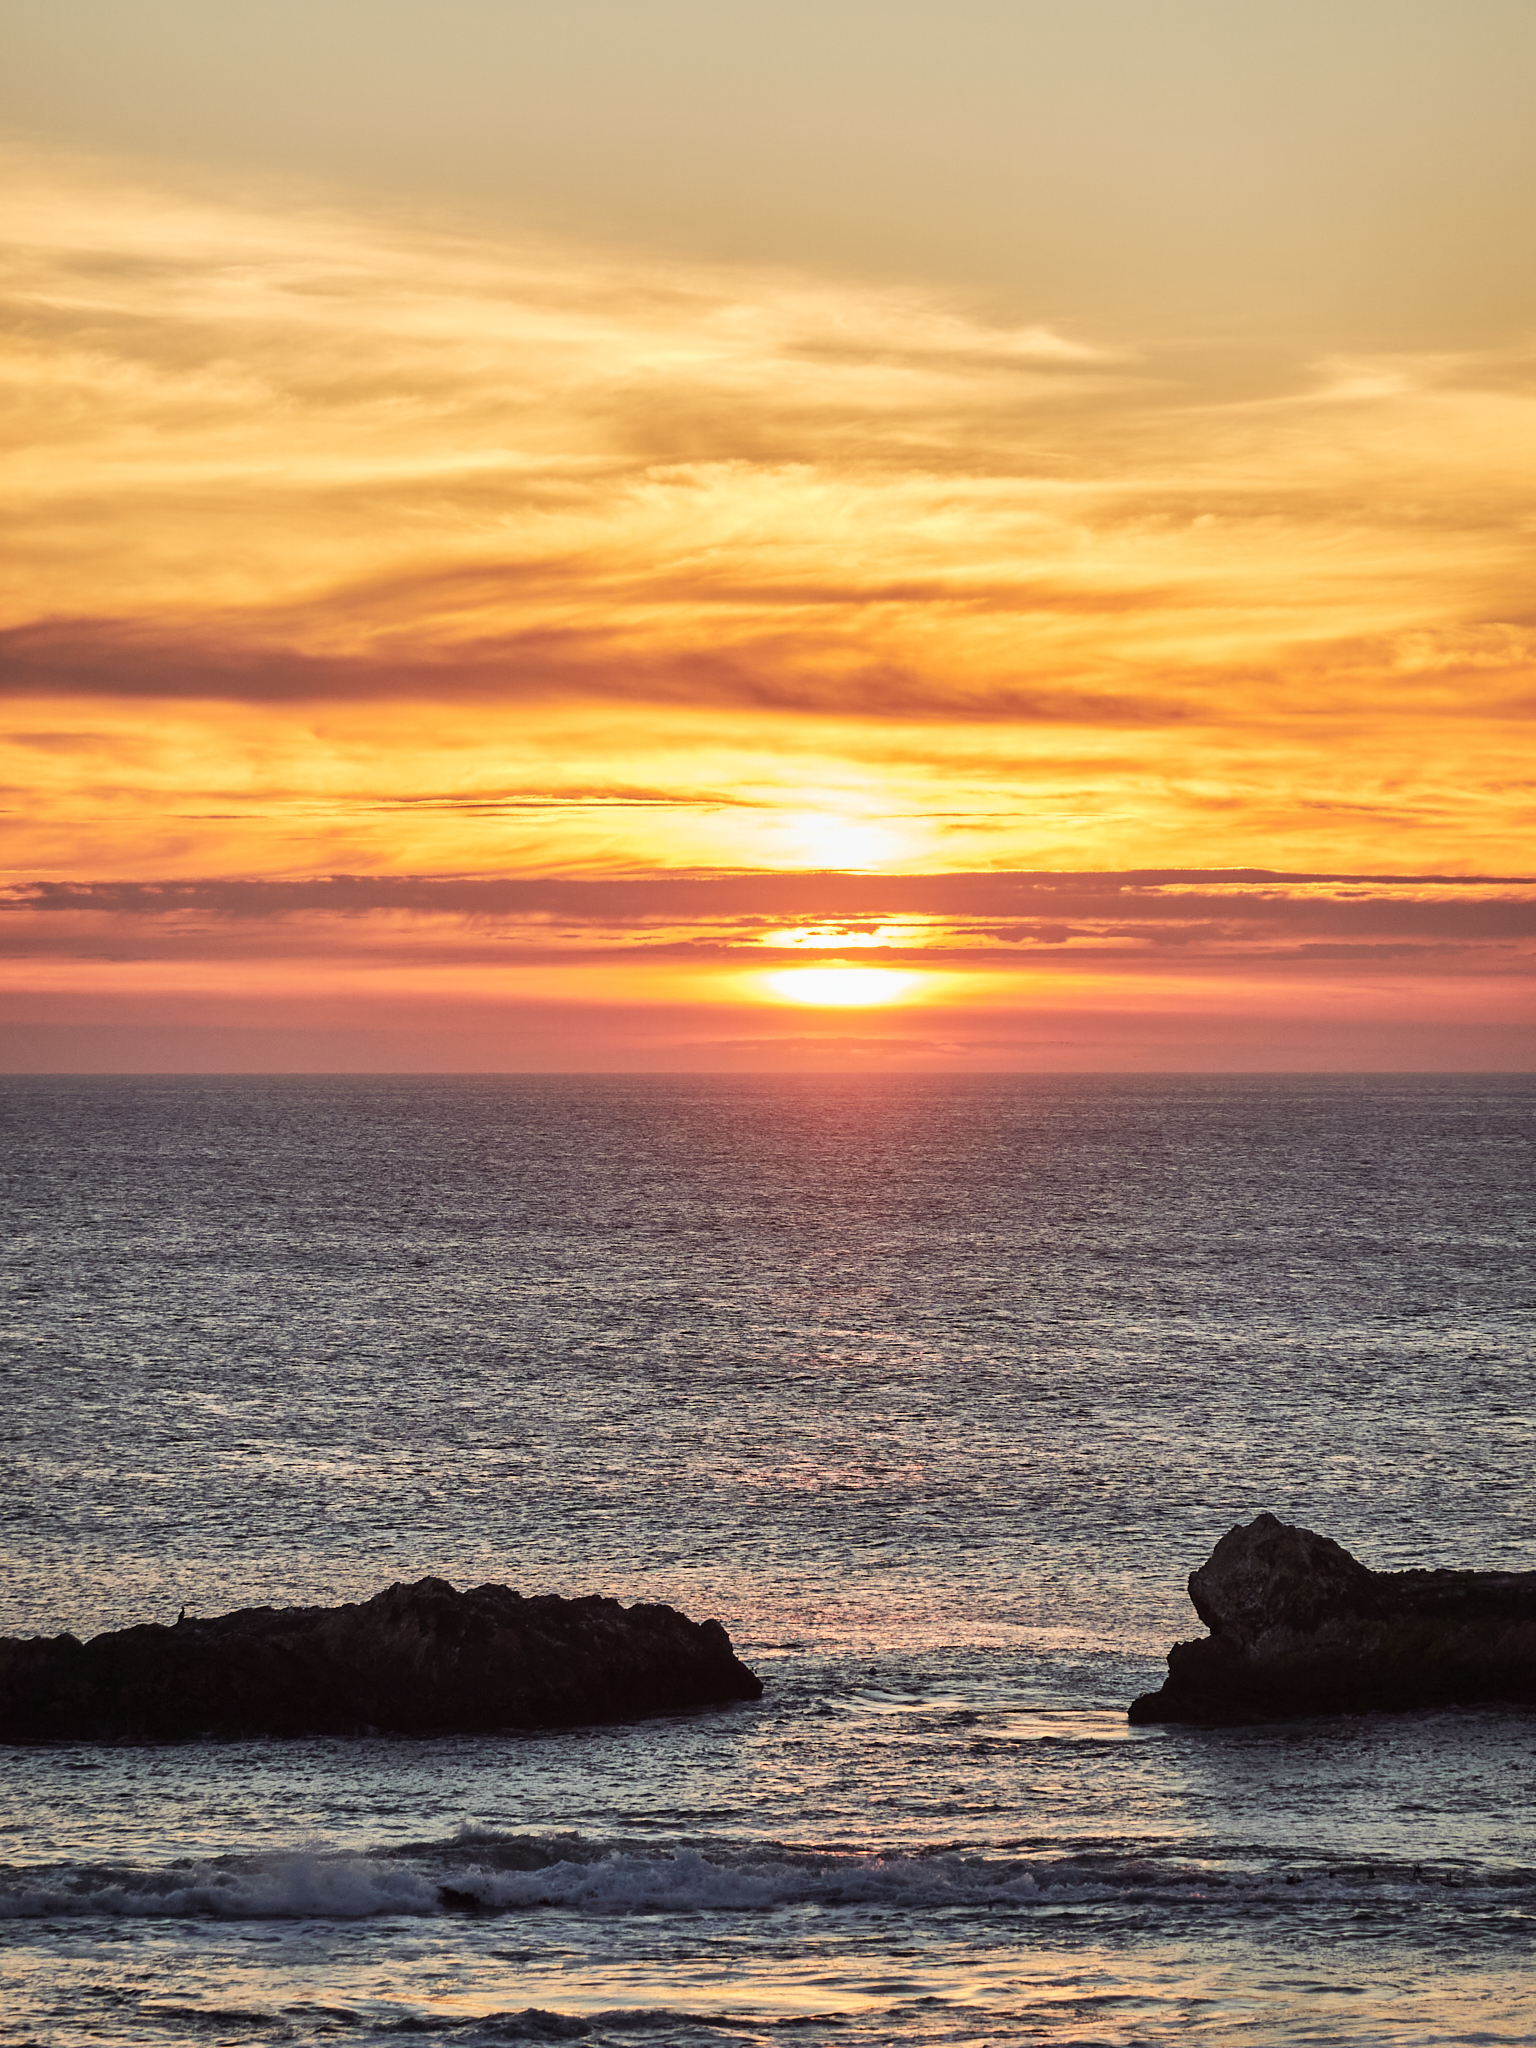 加州半月湾🌙在断崖酒店欣赏一场海边日落